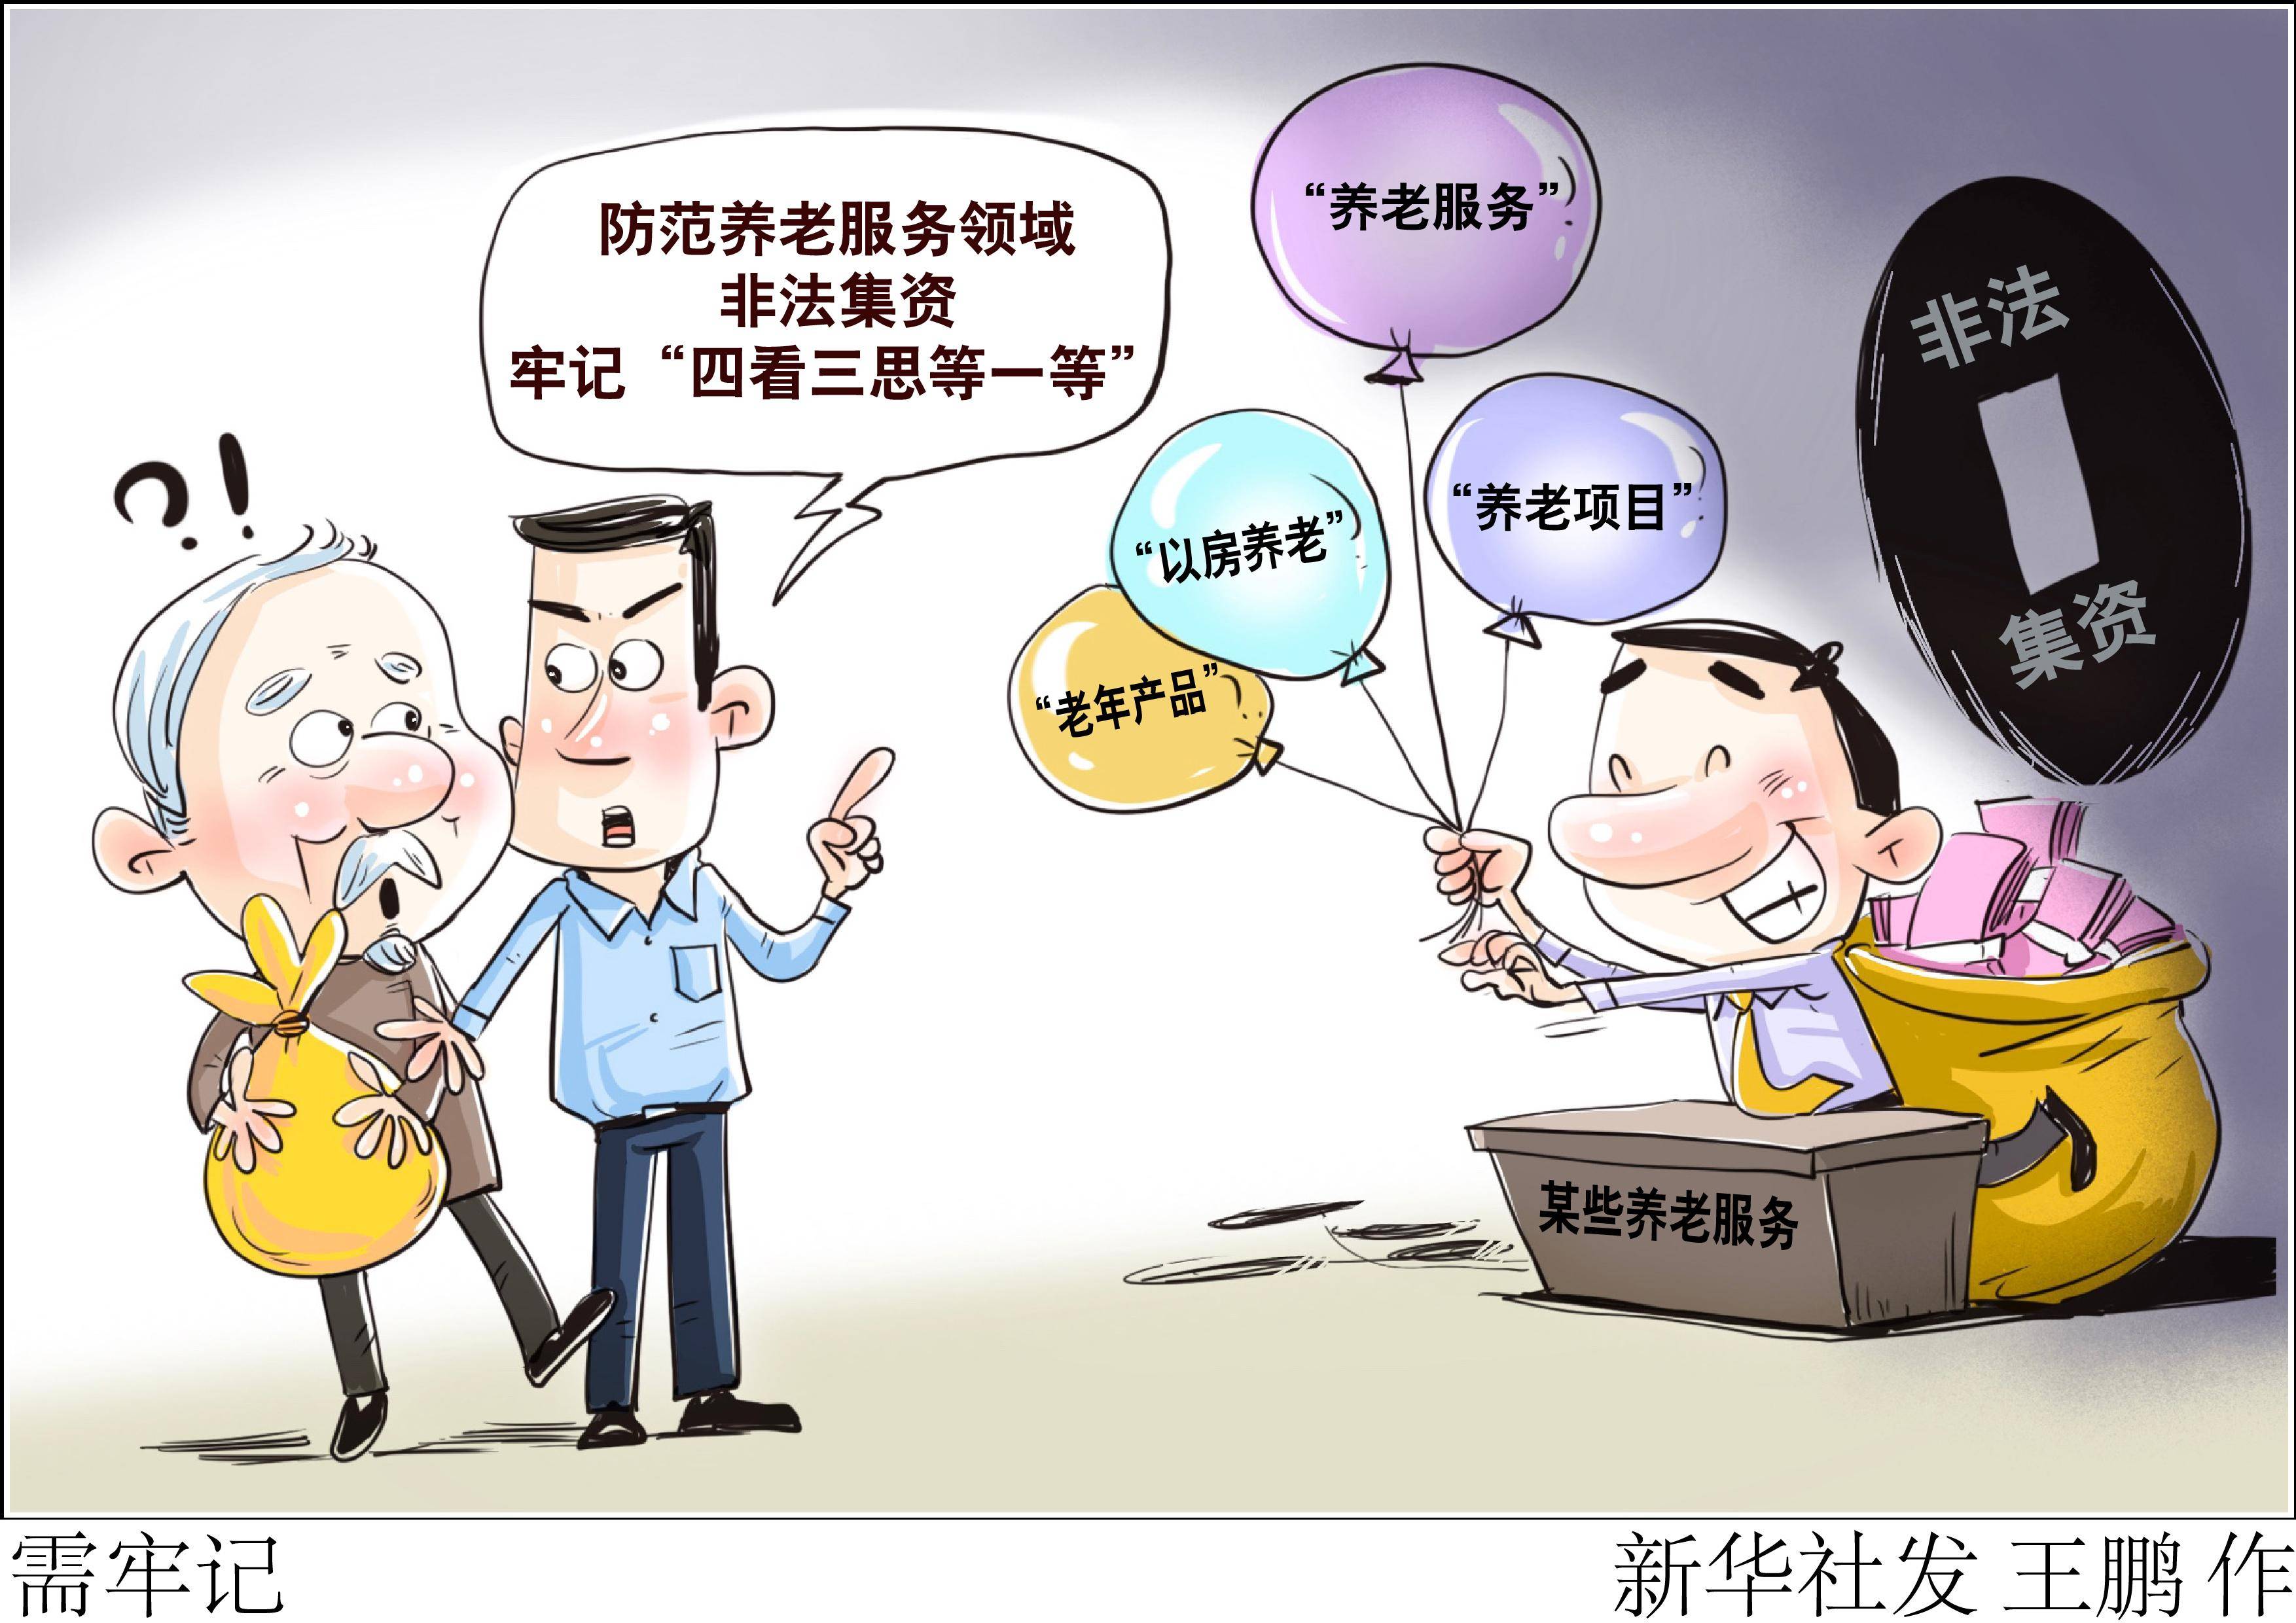 新华社图表,北京,2023年5月16日(漫画)需牢记近年来,养老服务领域非法